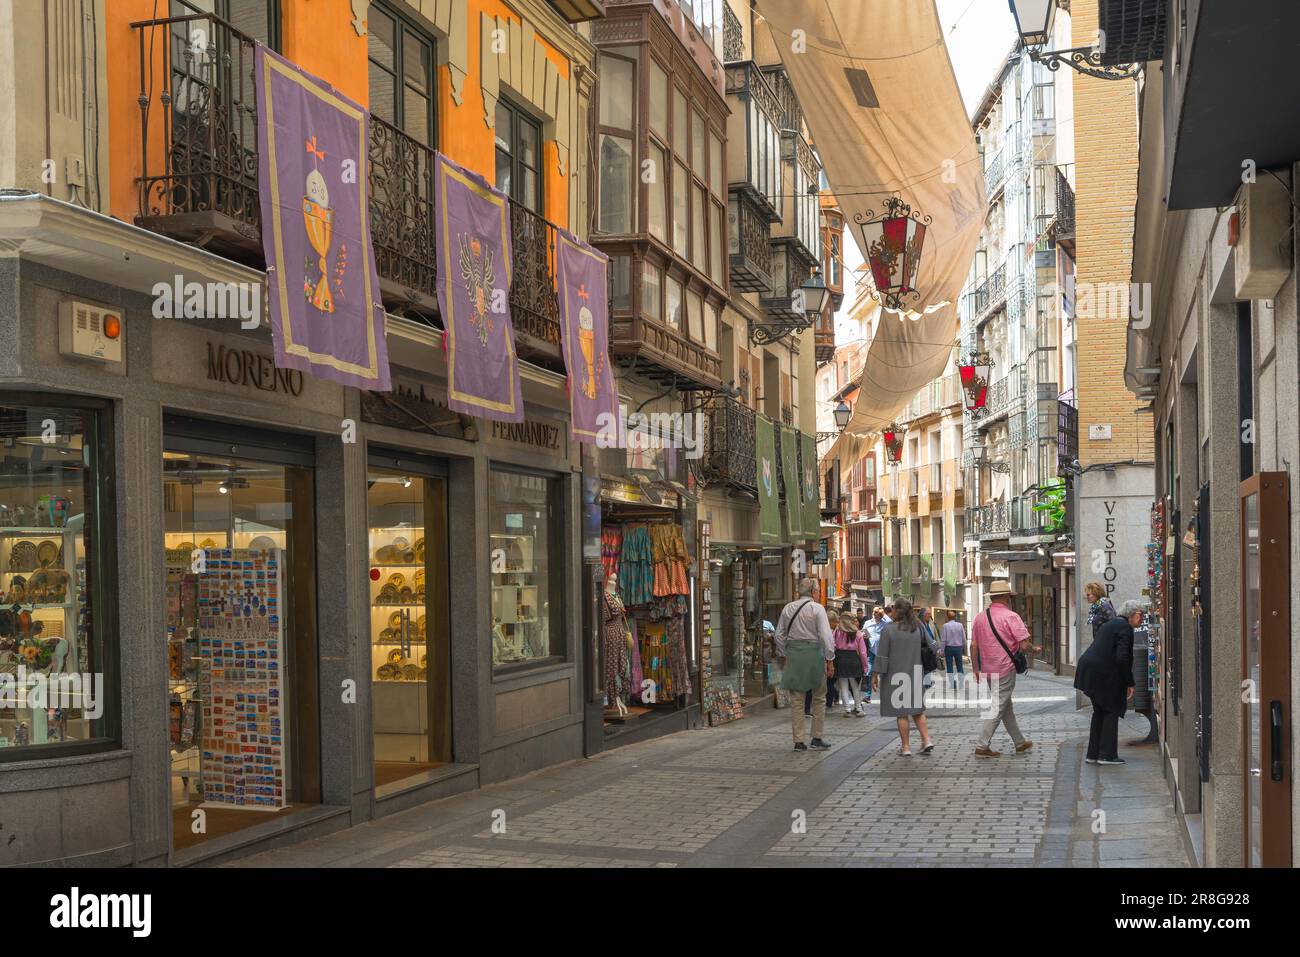 Toledo Street, vue des gens marchant dans la Calle Commercio, une rue commerçante populaire dans le centre historique de la vieille ville de Tolède, en Espagne Banque D'Images